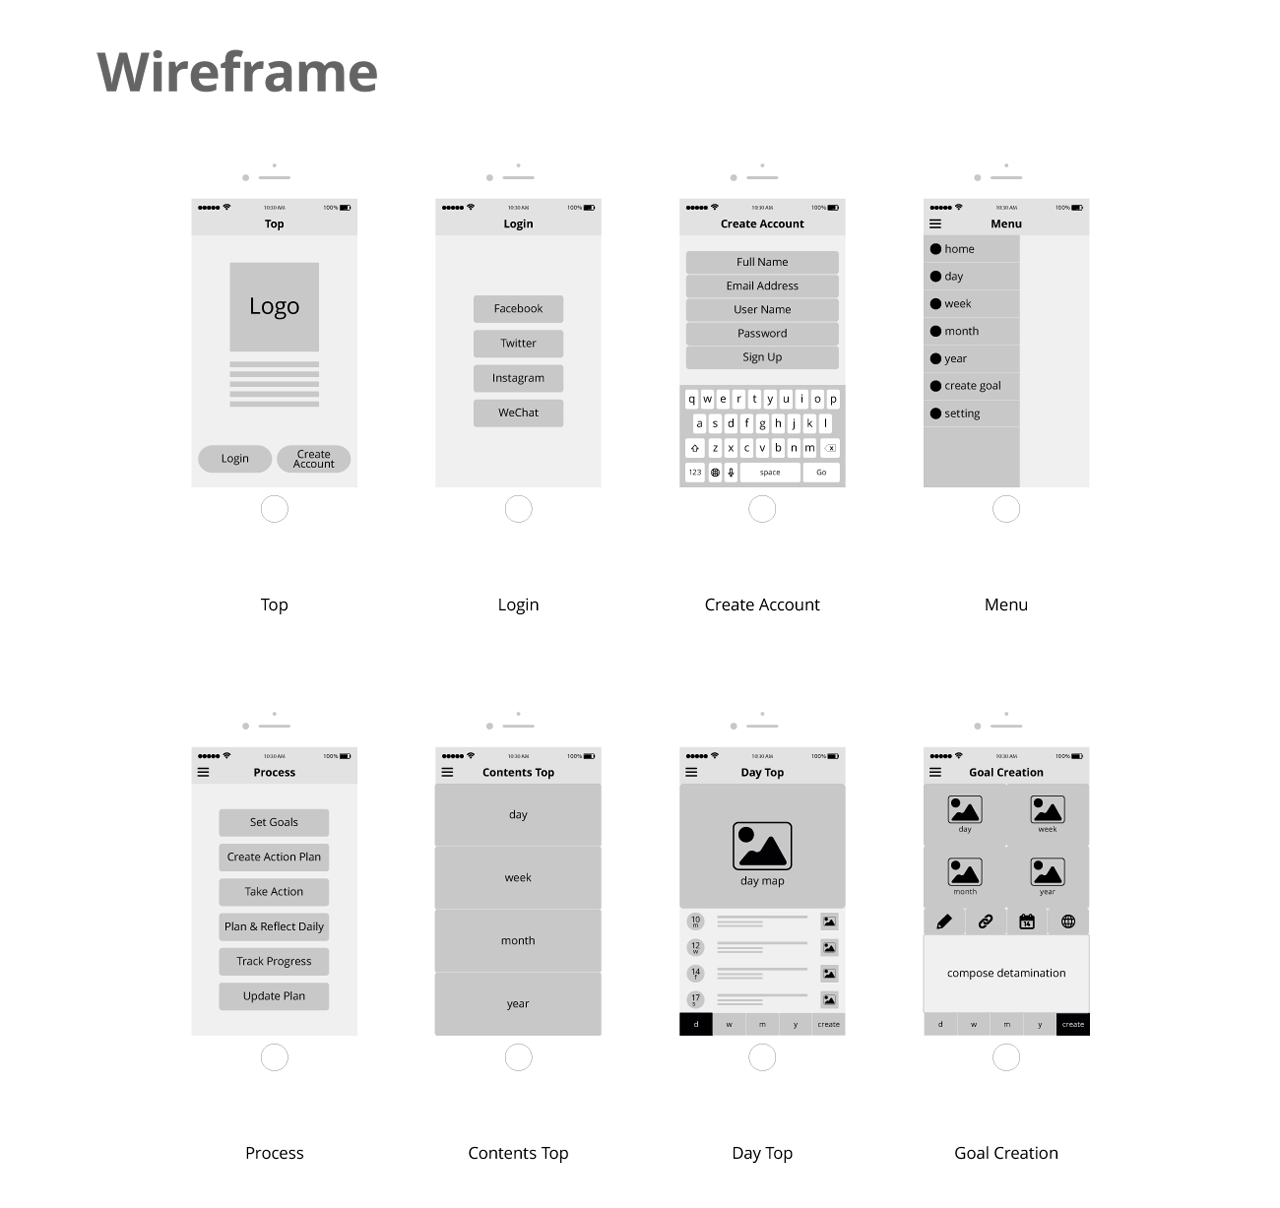 Mobile App dwmy Wireframe